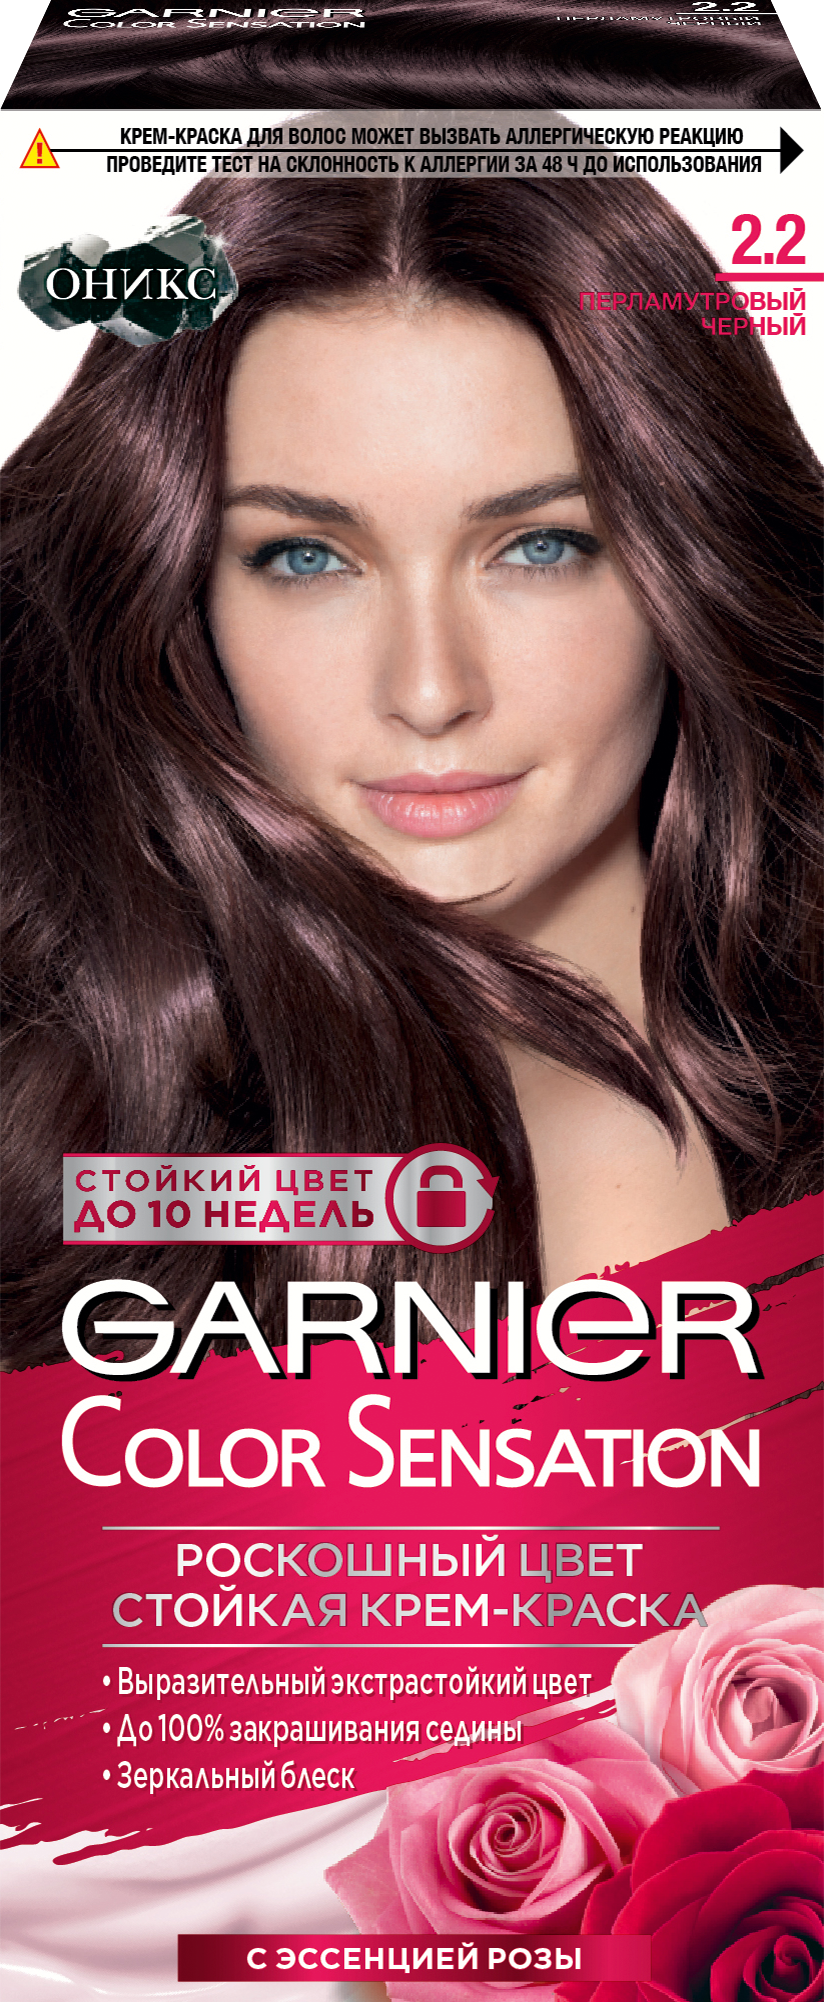 Garnier Стойкая крем-краска для волос "Color Sensation, 2.2 ПЕРЛАМУТРОВЫЙ ЧЕРНЫЙ